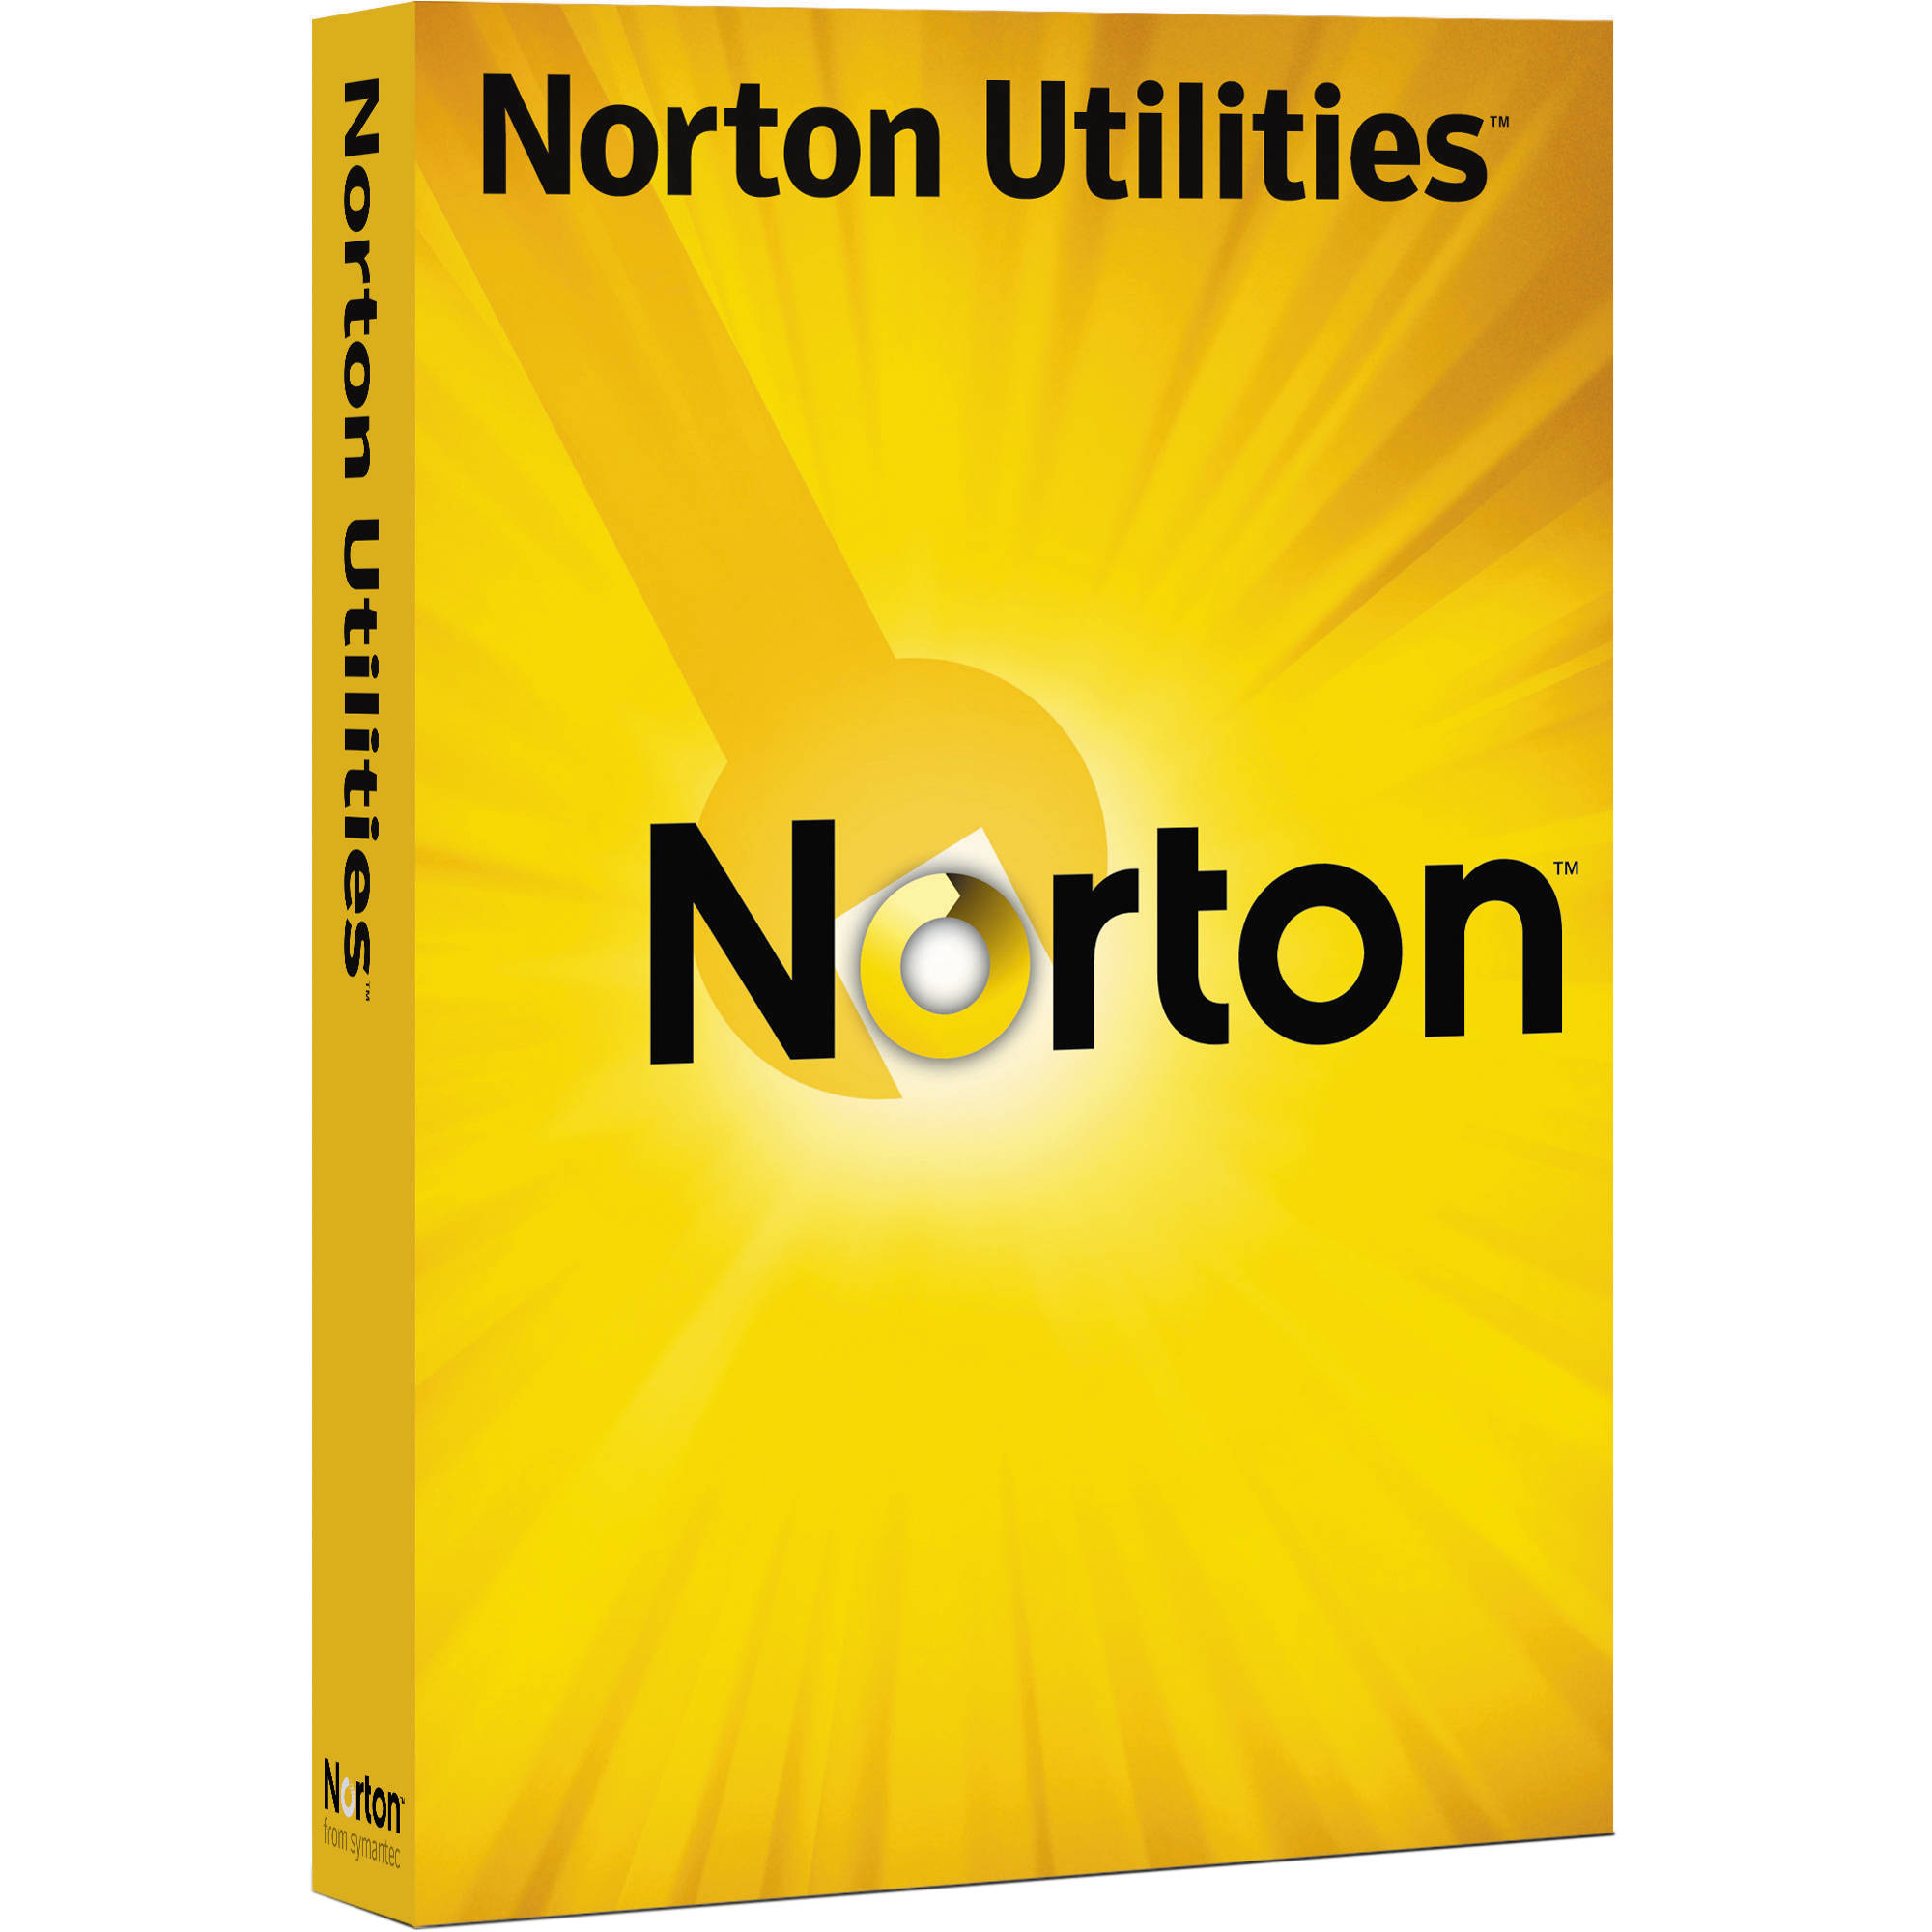 Norton Utilities 16 Activation Code 2015 Crack Full Download